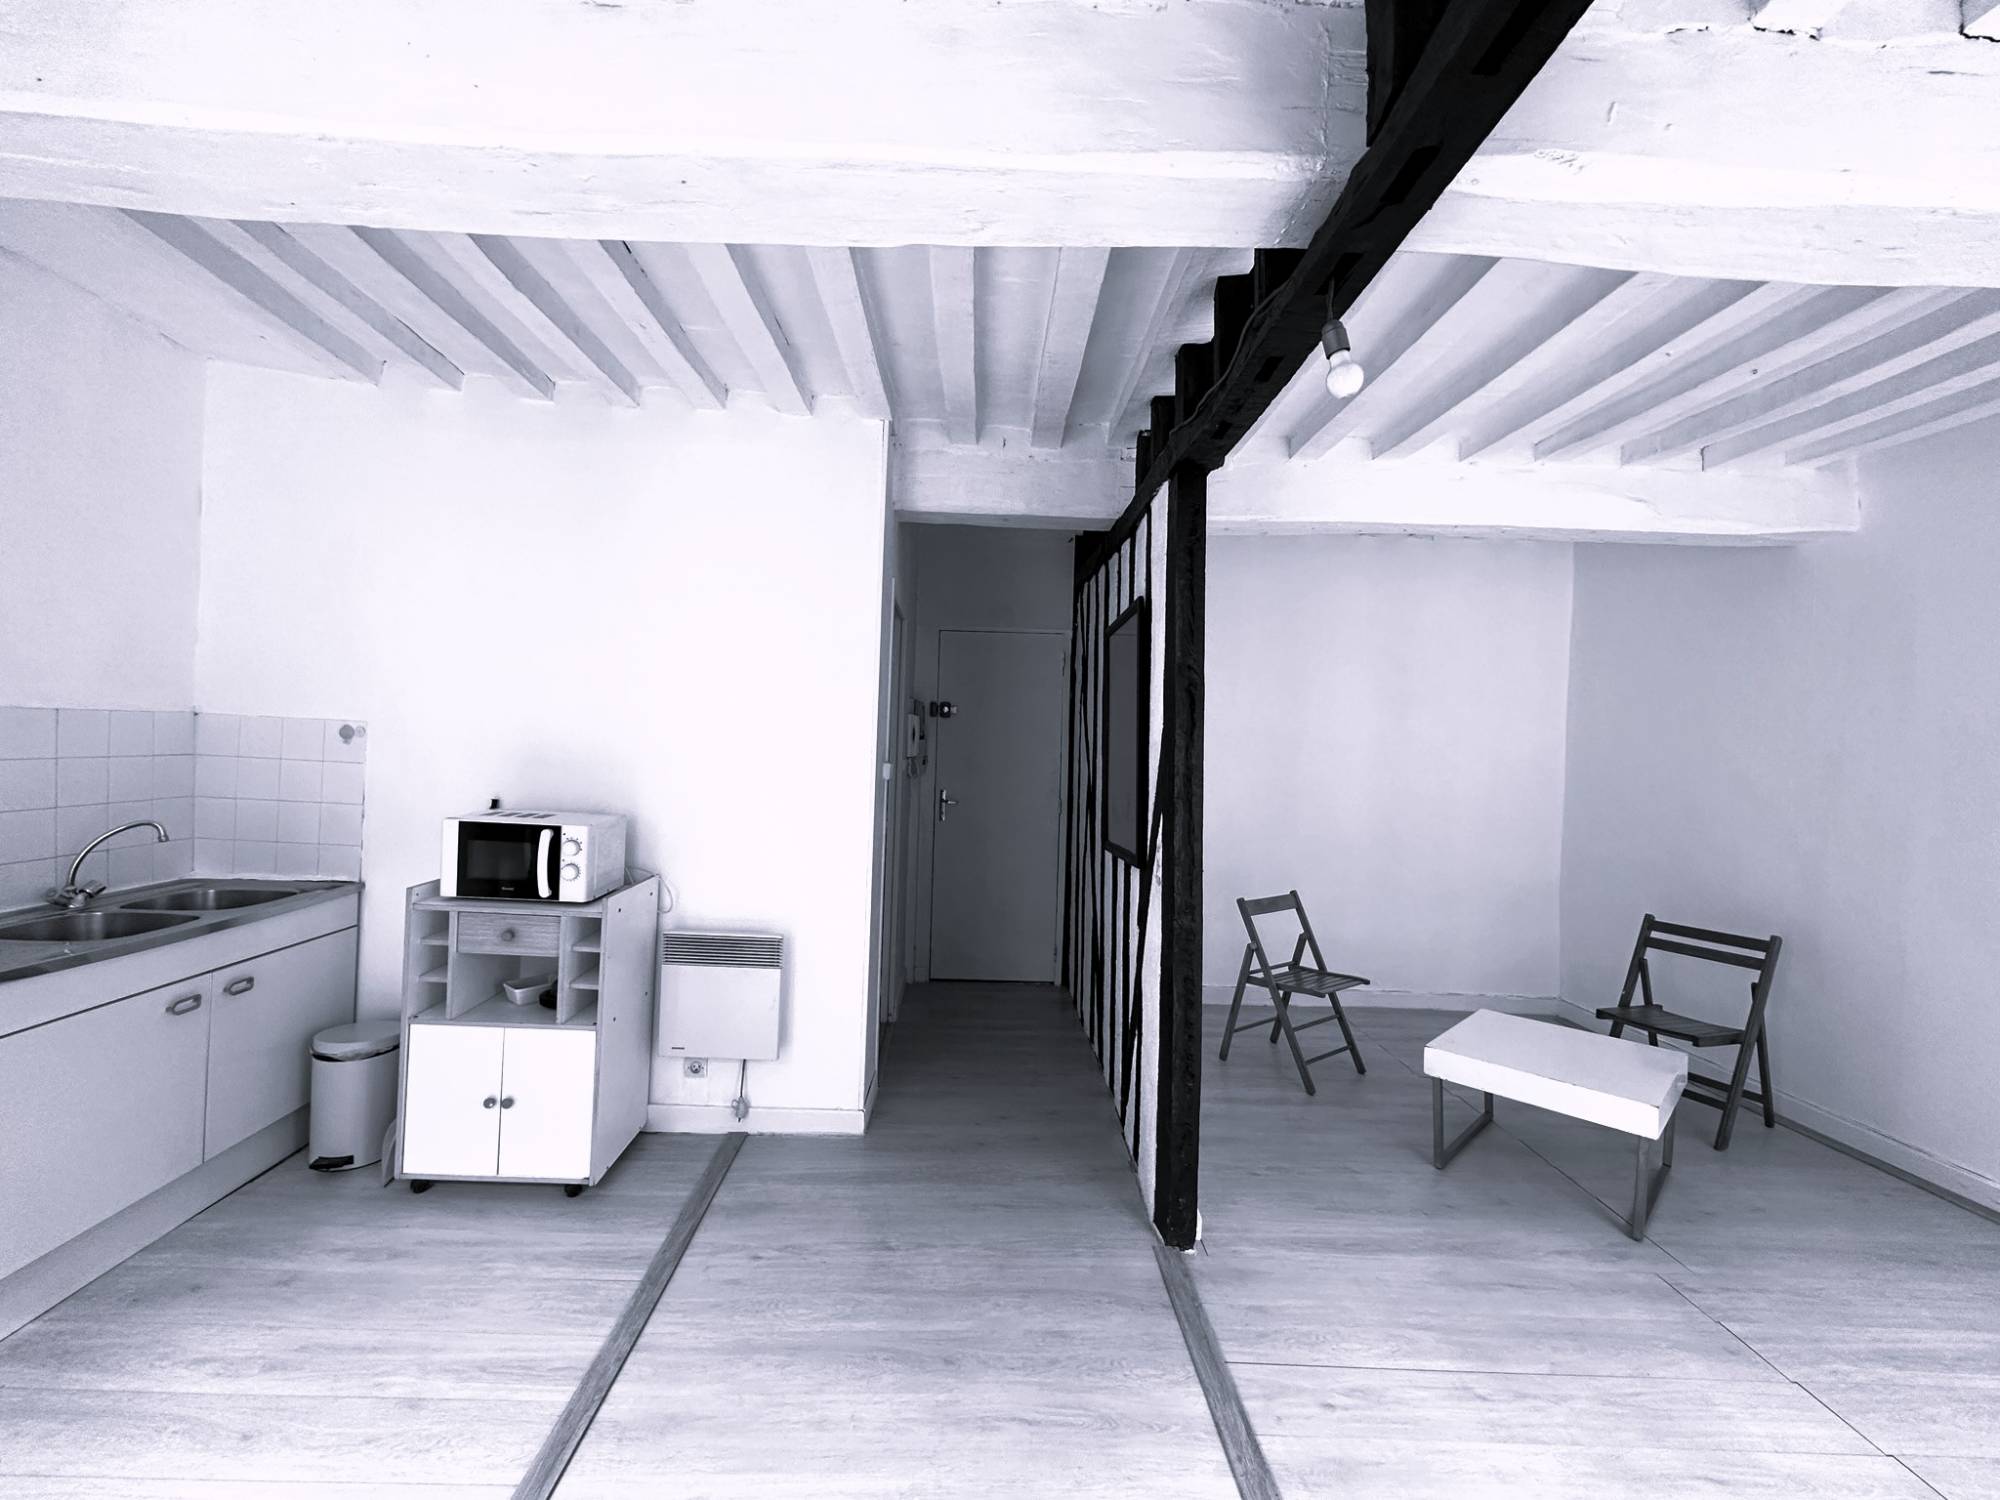 VENDU Studio en hyper-centre, d'une superficie de 29.11m² proche de la plage et du port de Dieppe, Seine-Maritime.